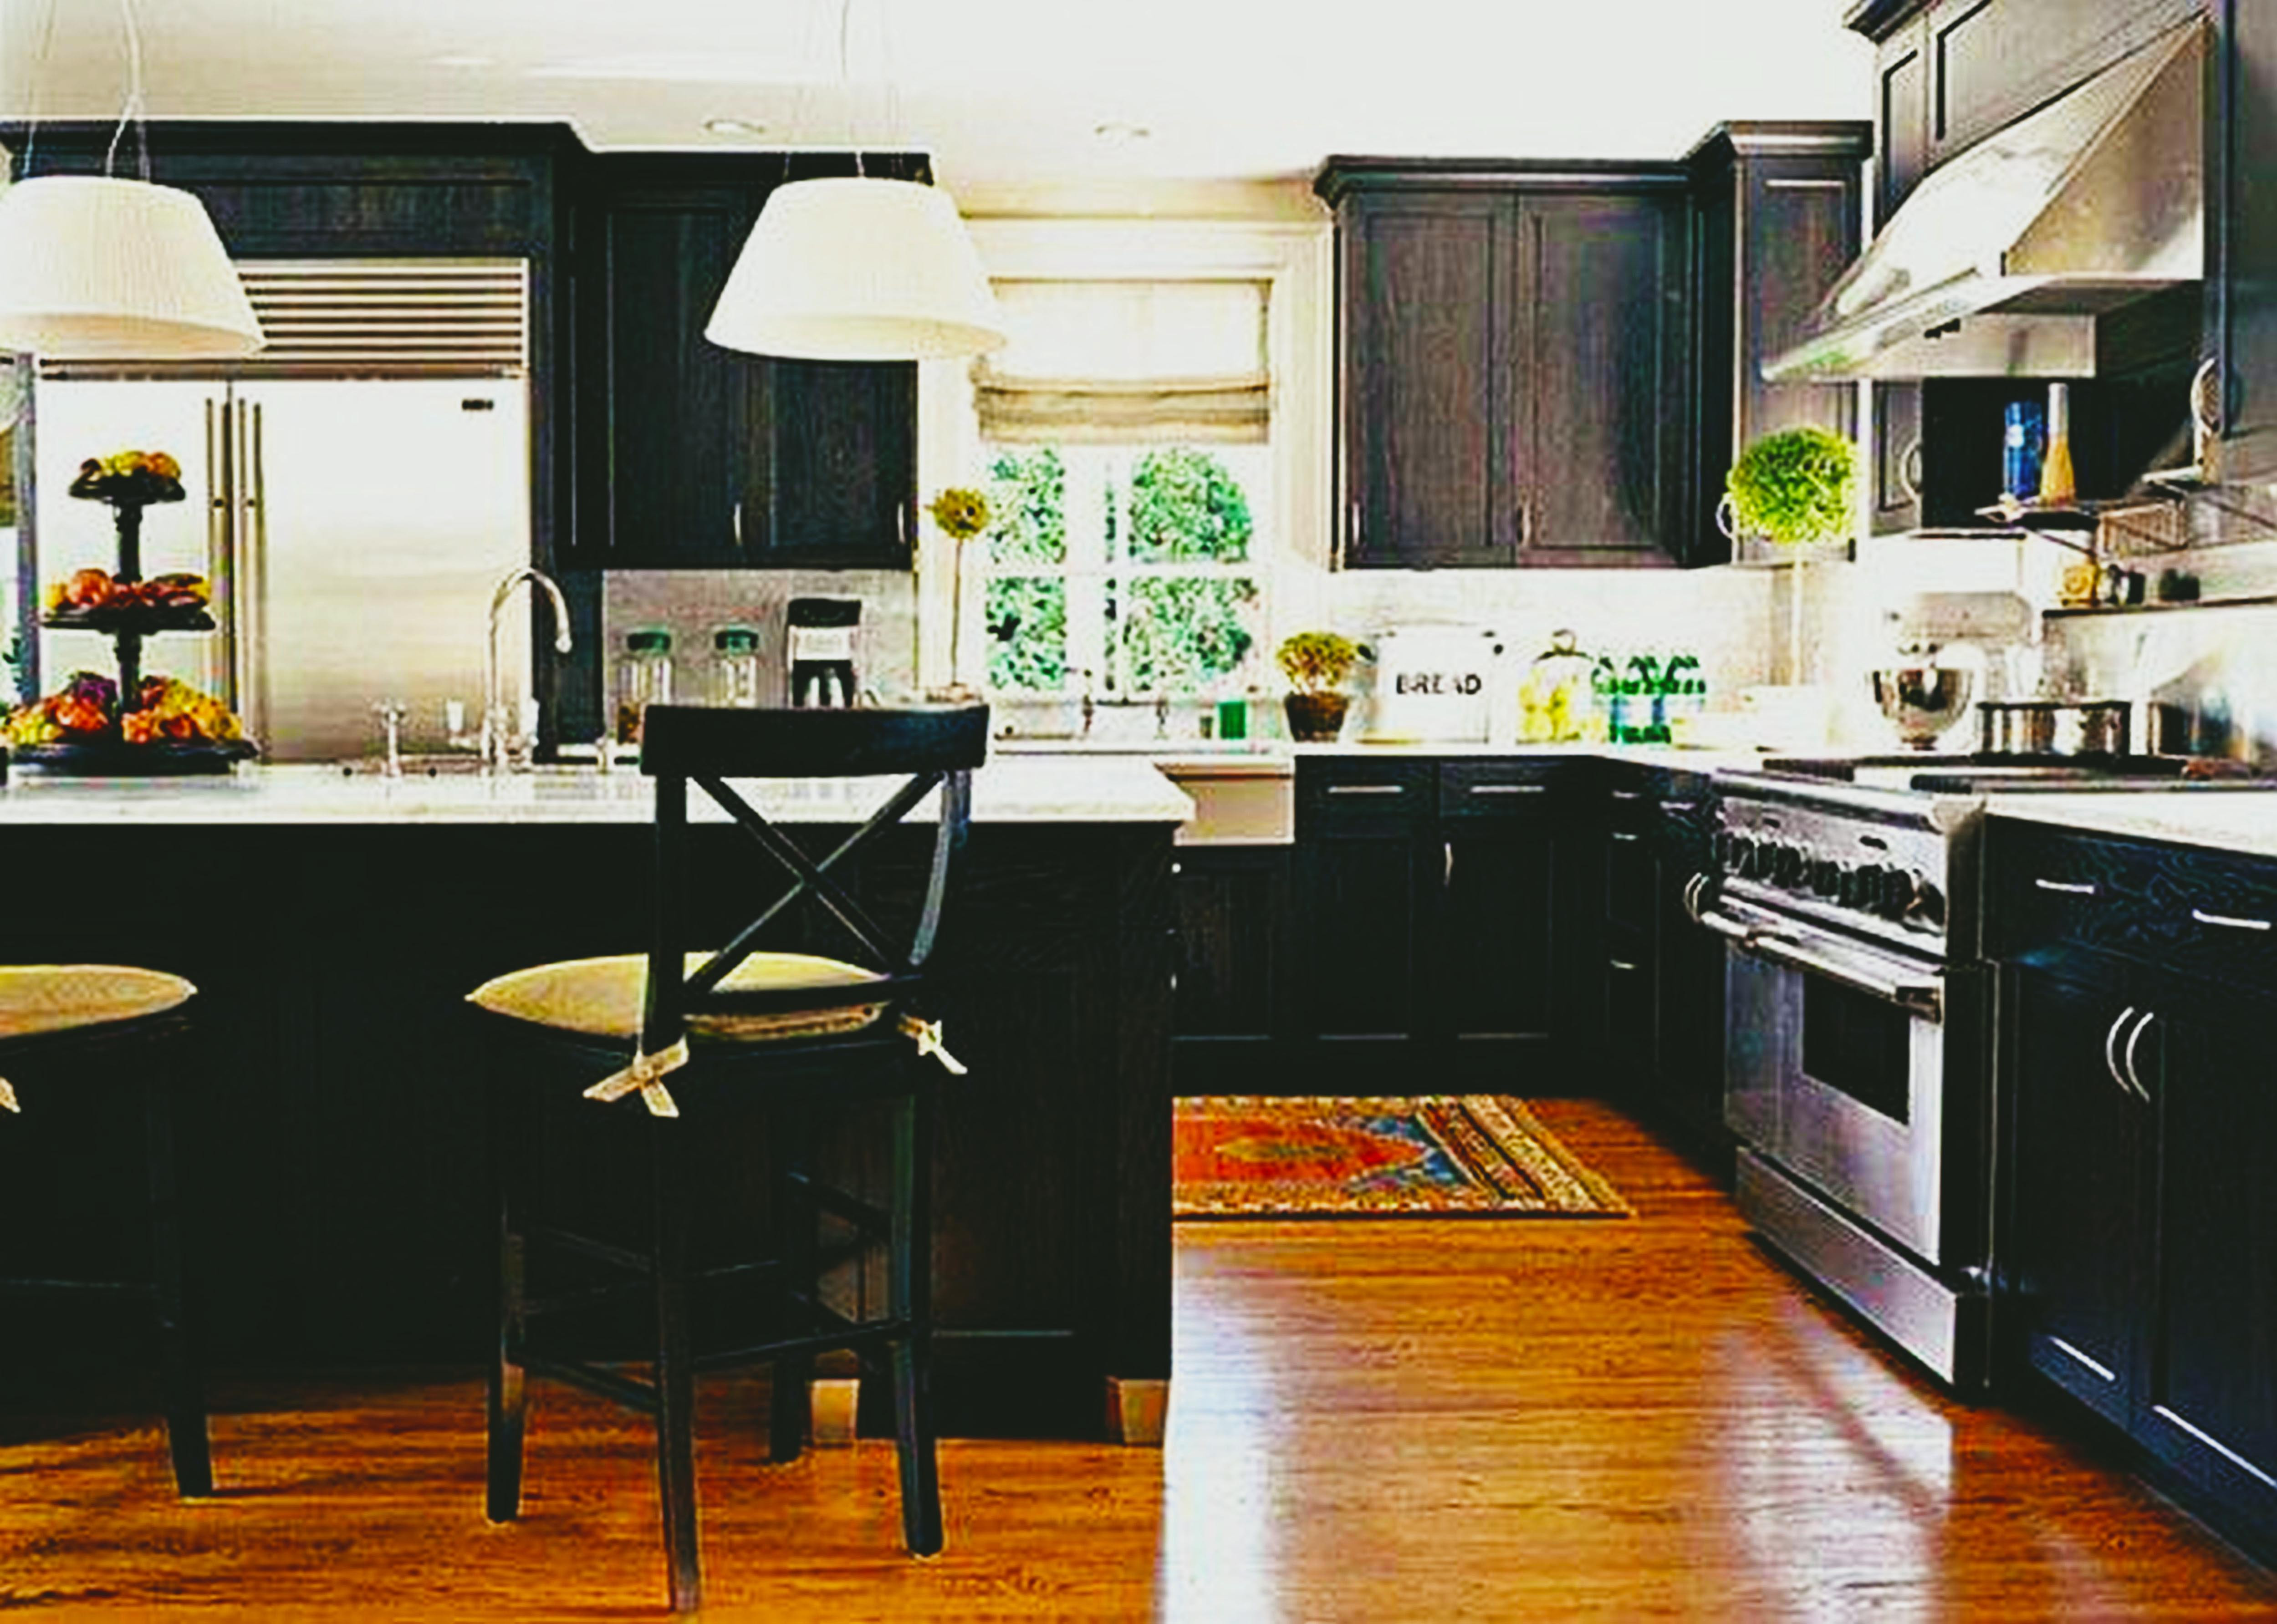 Best ideas about Dark Kitchen Ideas
. Save or Pin Custom Black Kitchen Cabinets Now.